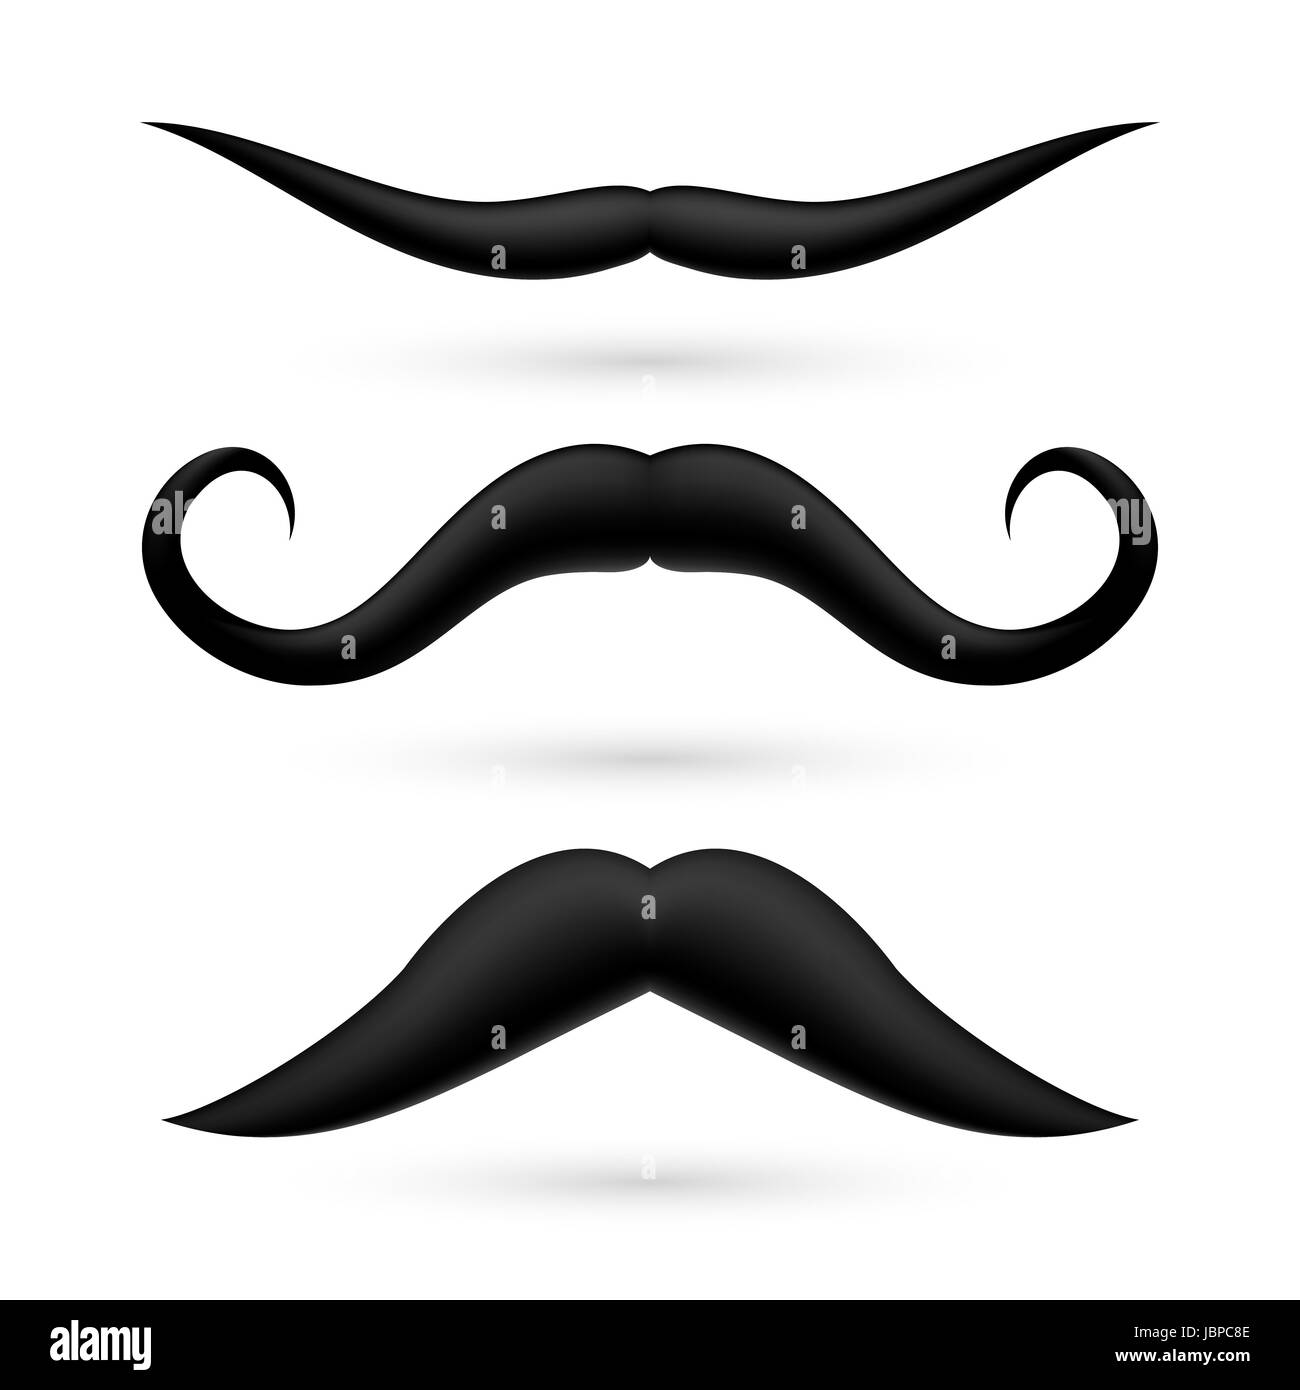 A set of three fake moustache on white background Stock Photo - Alamy